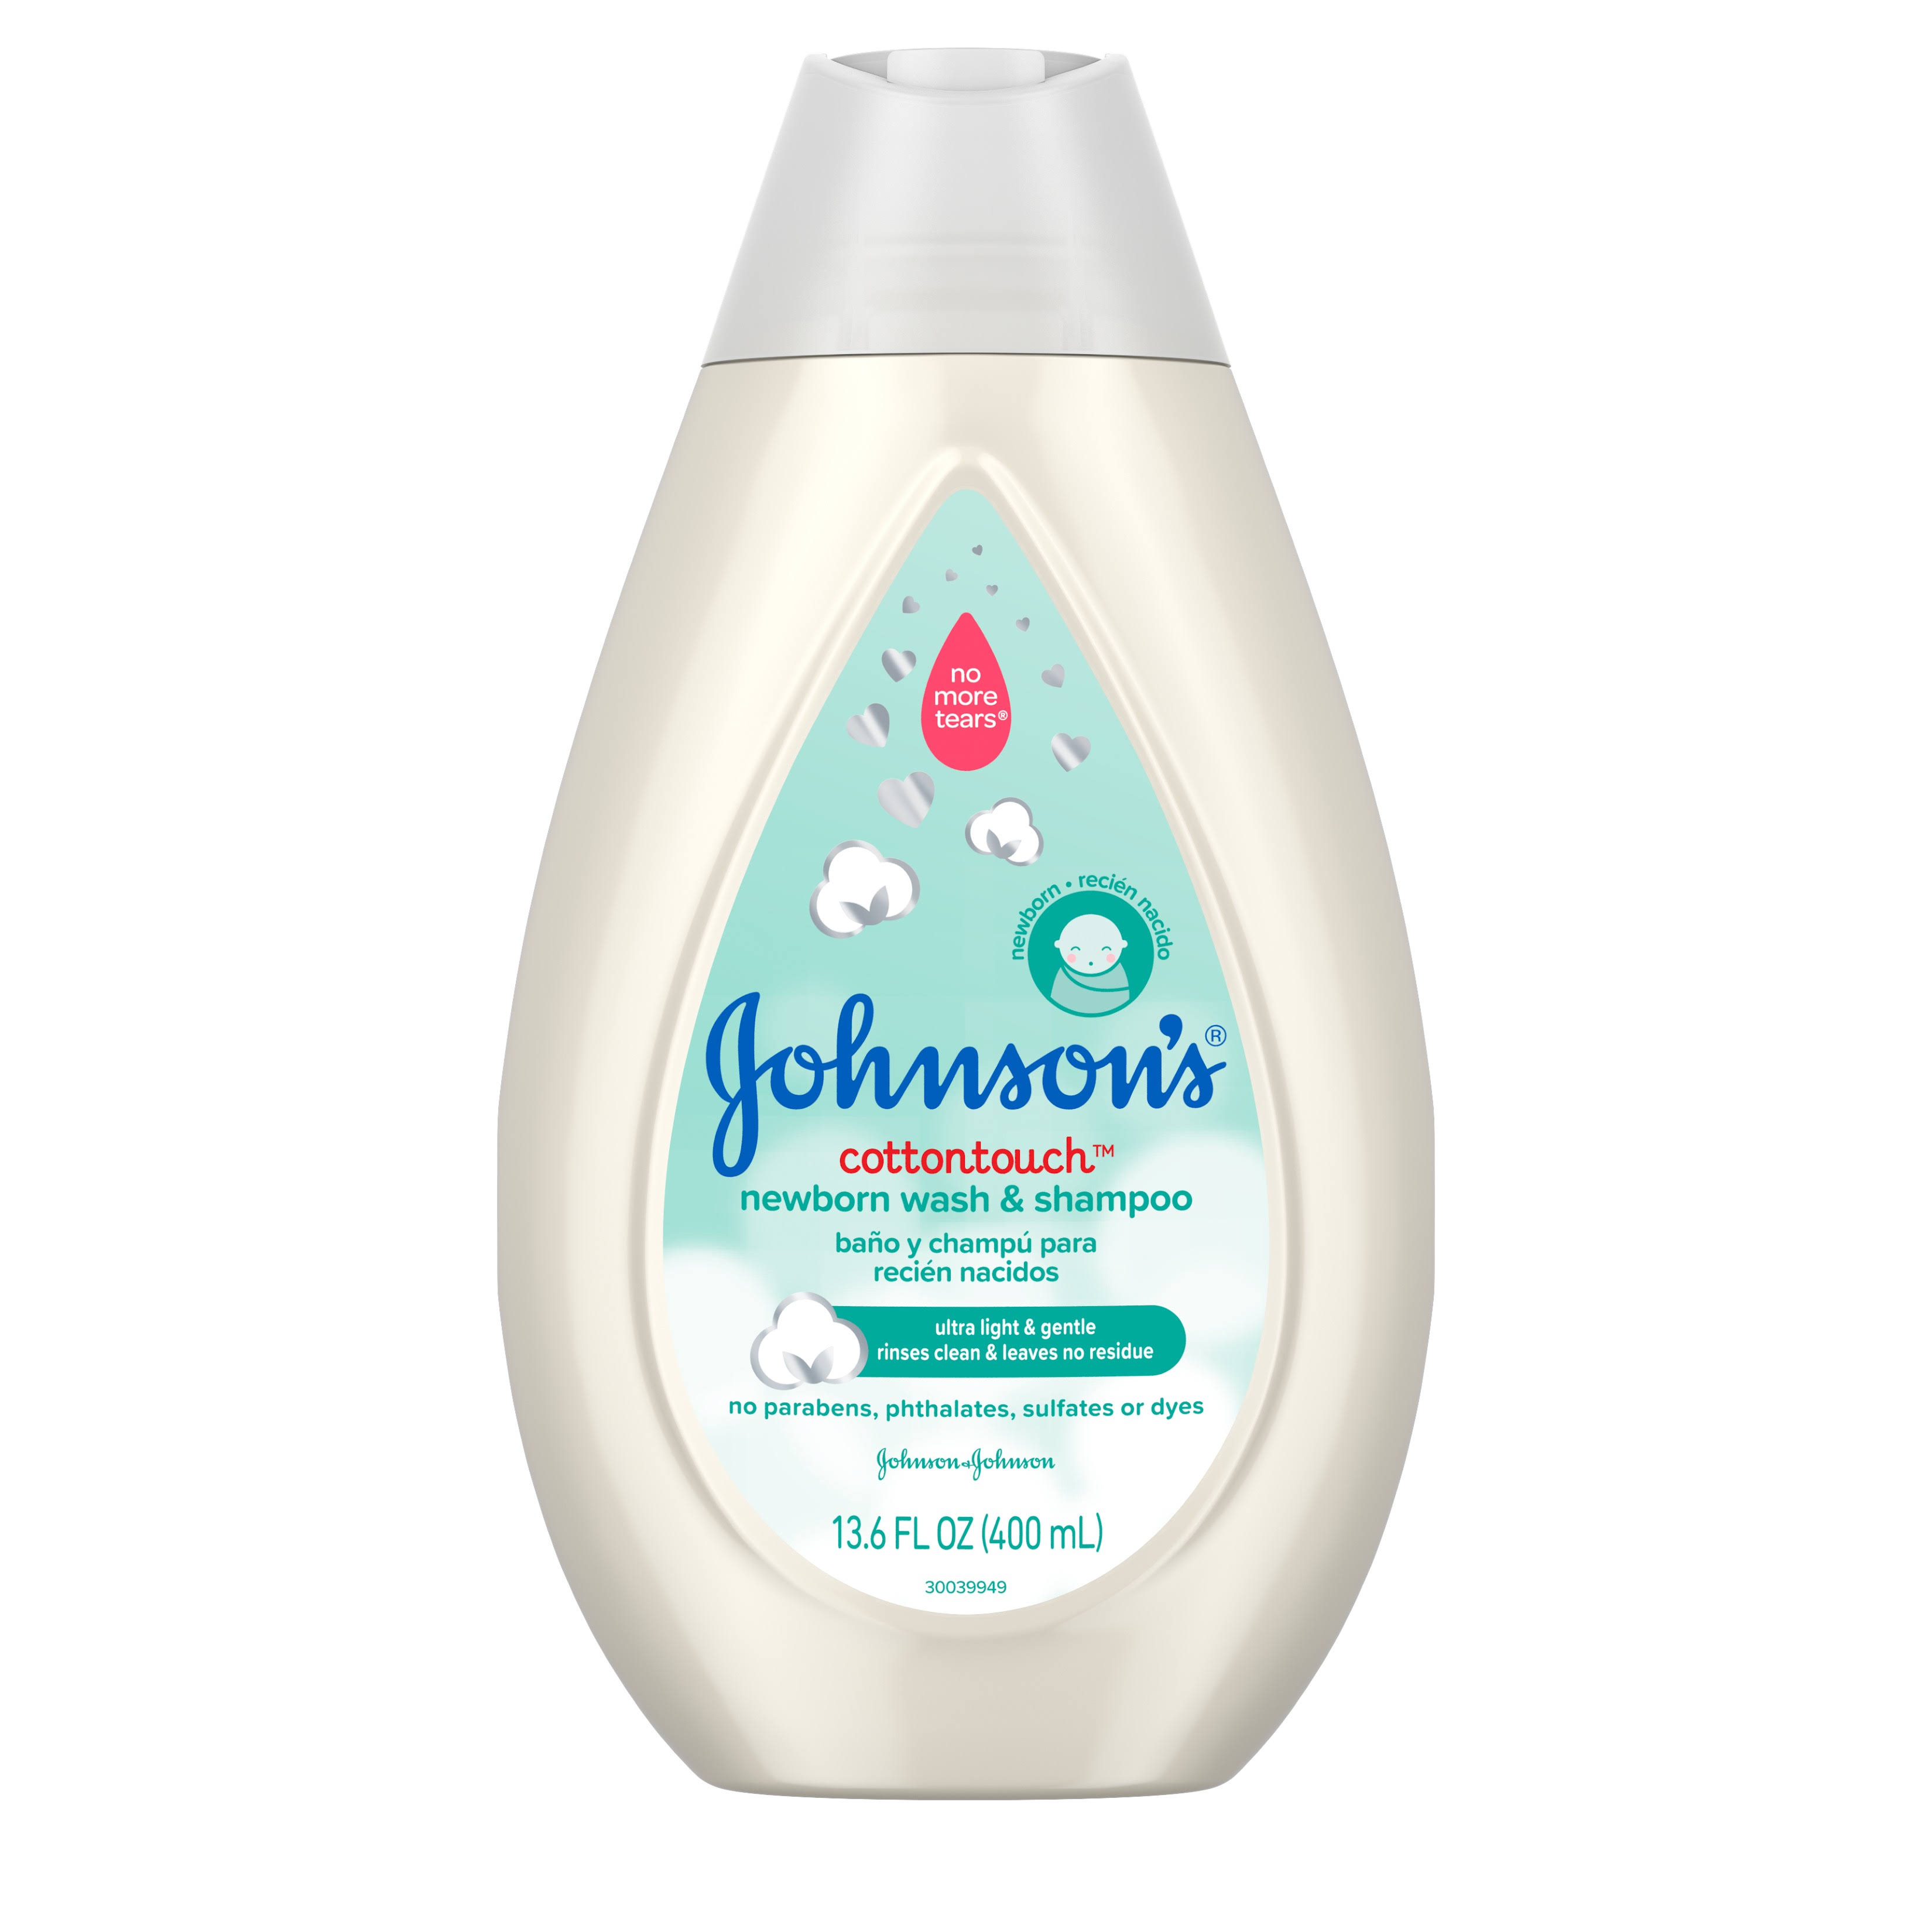 Johnson's CottonTouch Newborn Baby Wash & Shampoo - 13.6 fl oz bottle